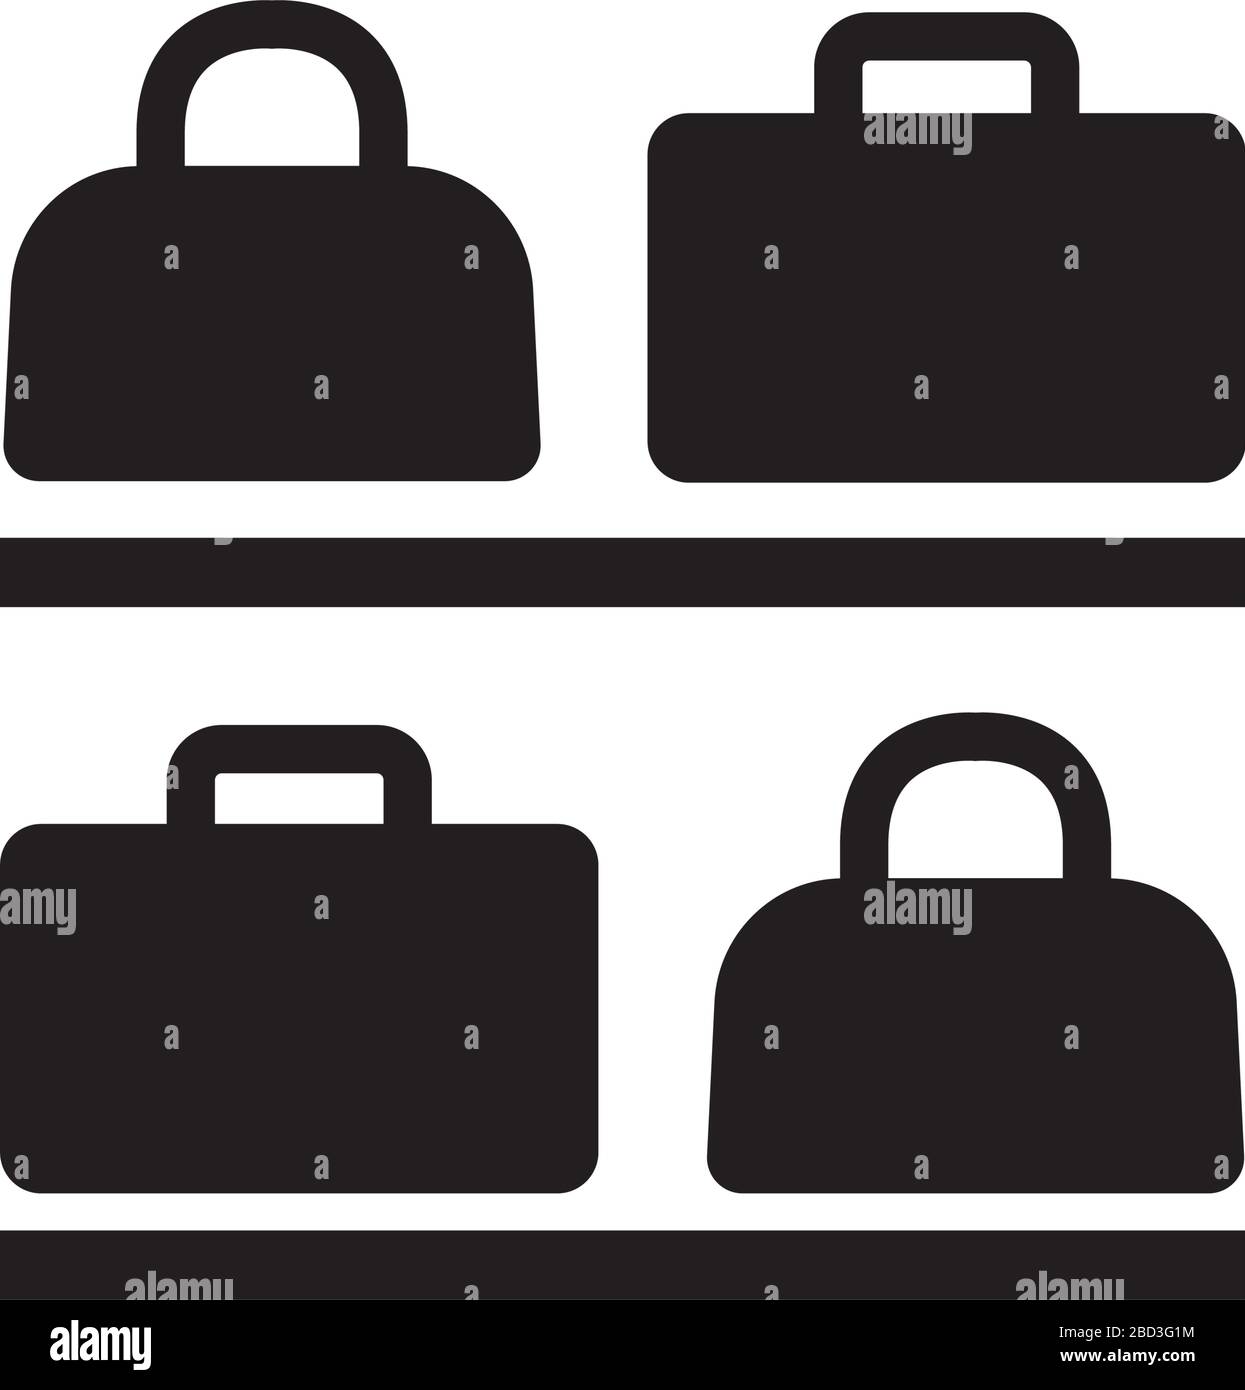 baggage storage icon / public information symbol Stock Vector